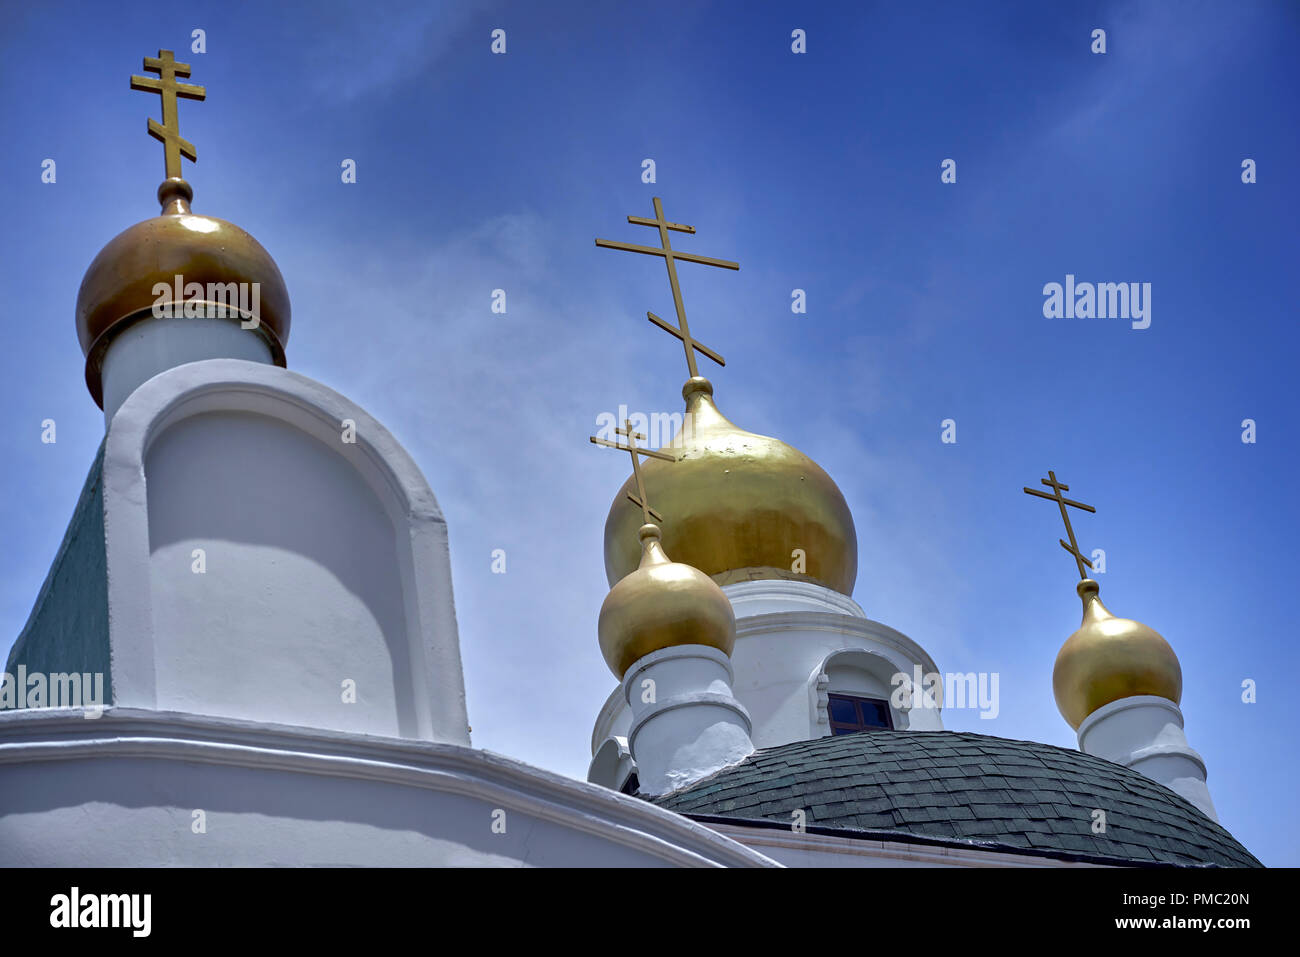 Église orthodoxe russe Pattaya Thaïlande Asie du Sud-est Banque D'Images